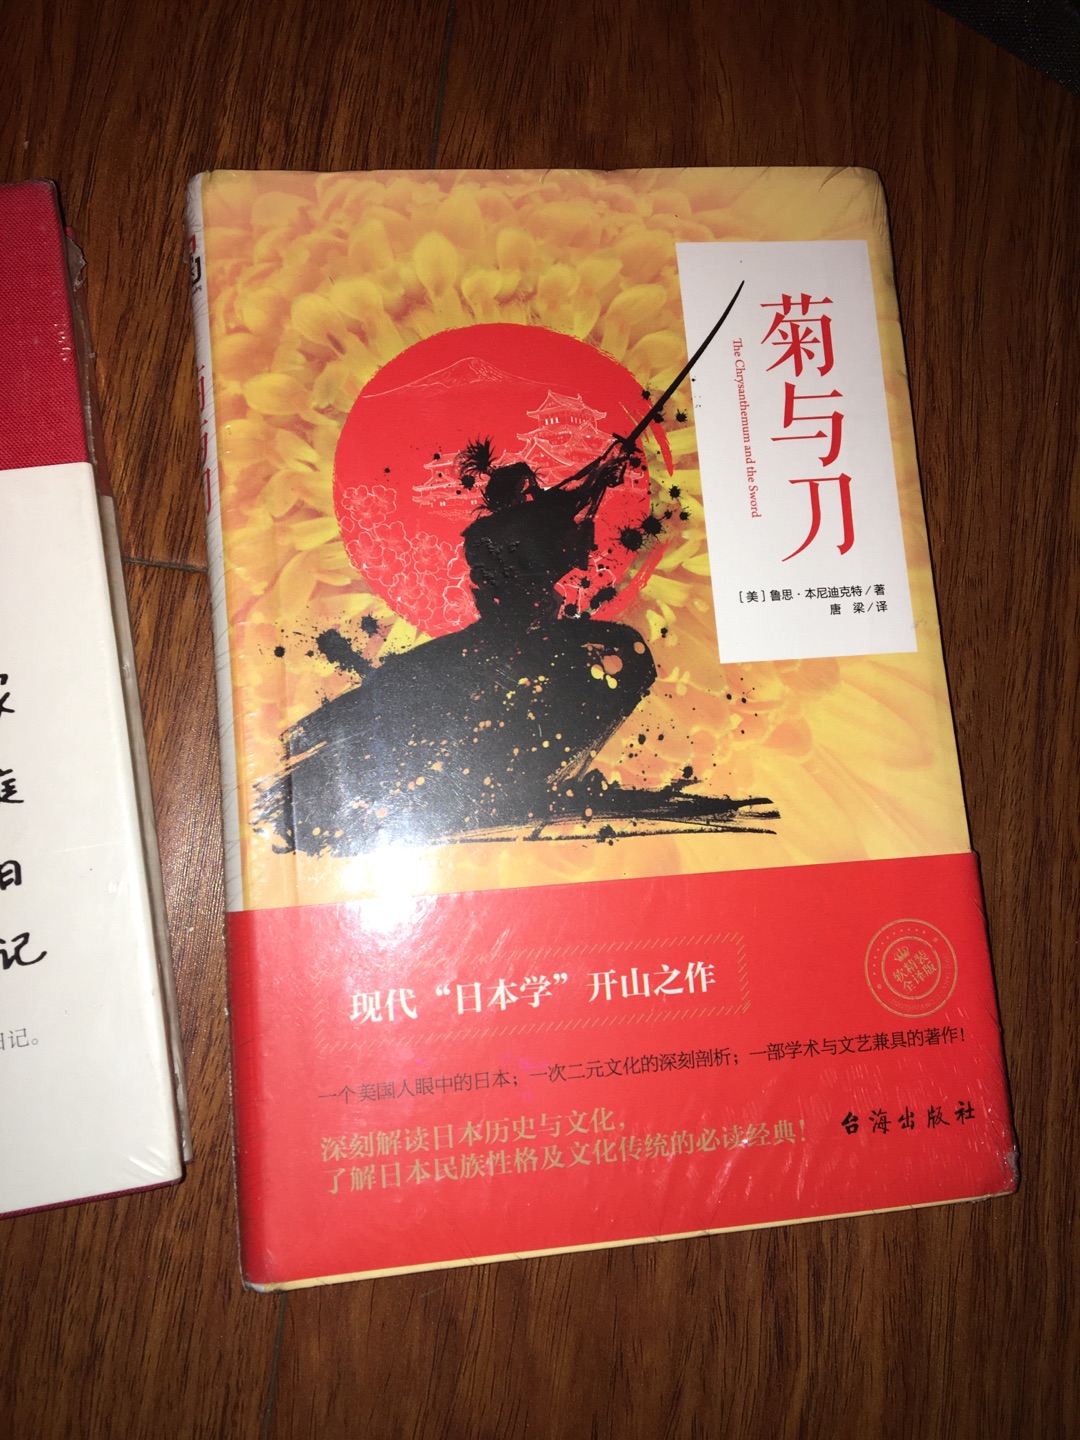 了解日本非常棒的一本书，包装装订质量没问题，图书活动时购买 价格实惠